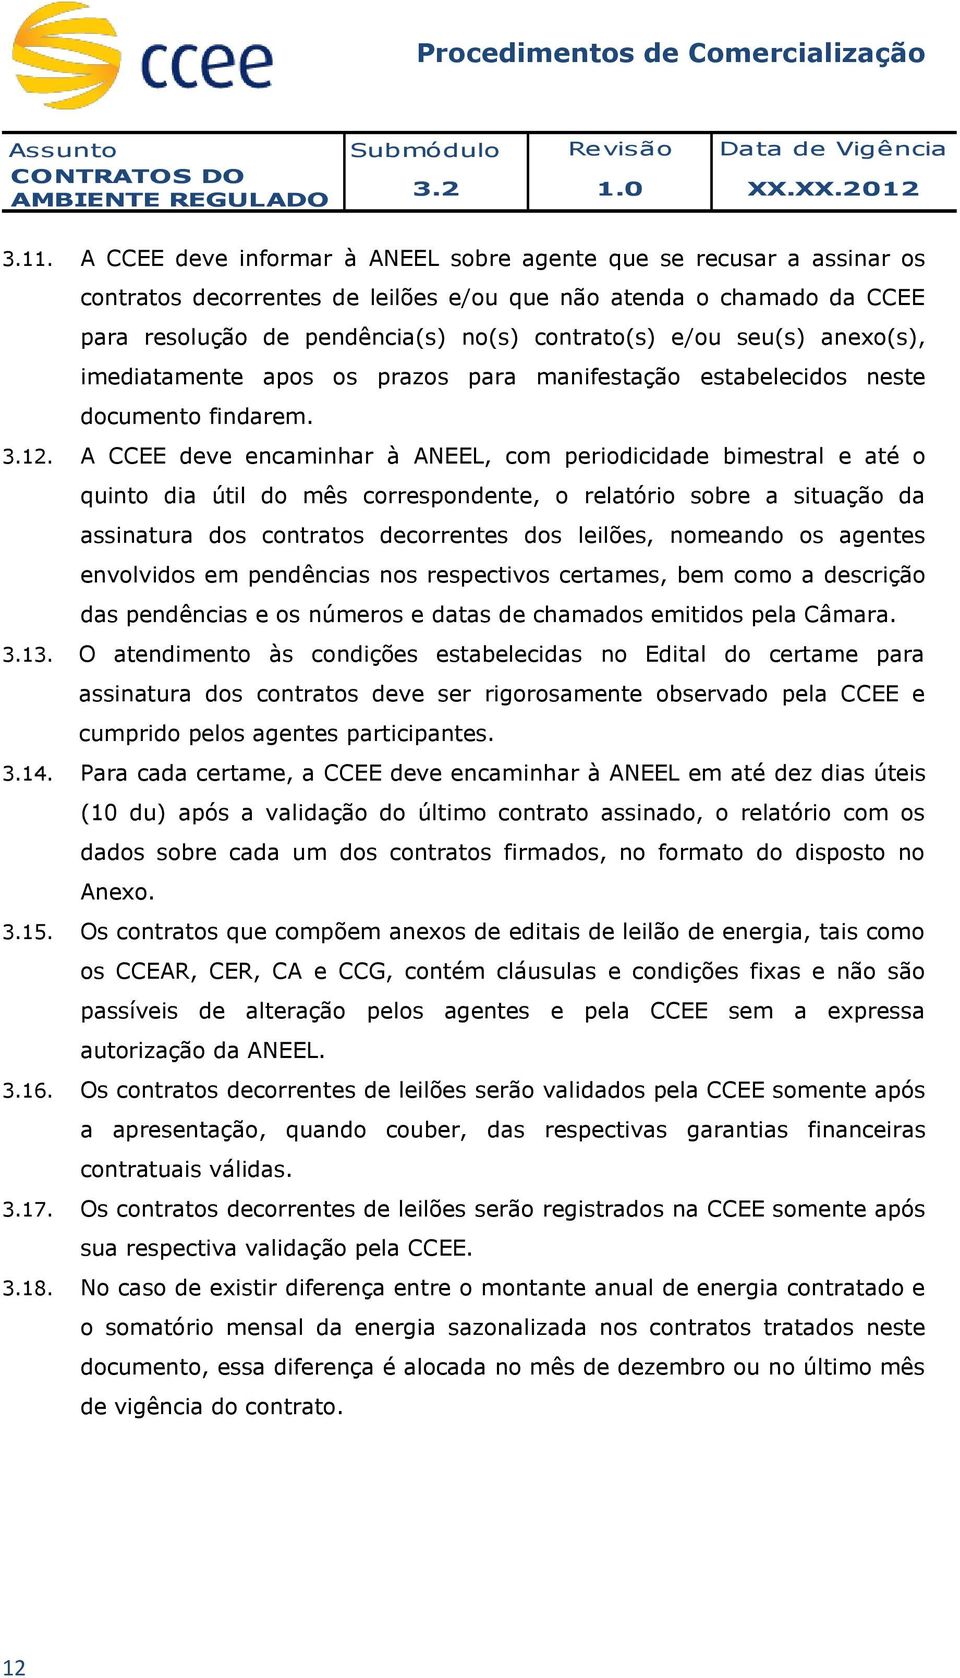 A CCEE deve encaminhar à ANEEL, com periodicidade bimestral e até o quinto dia útil do mês correspondente, o relatório sobre a situação da assinatura dos contratos decorrentes dos leilões, nomeando